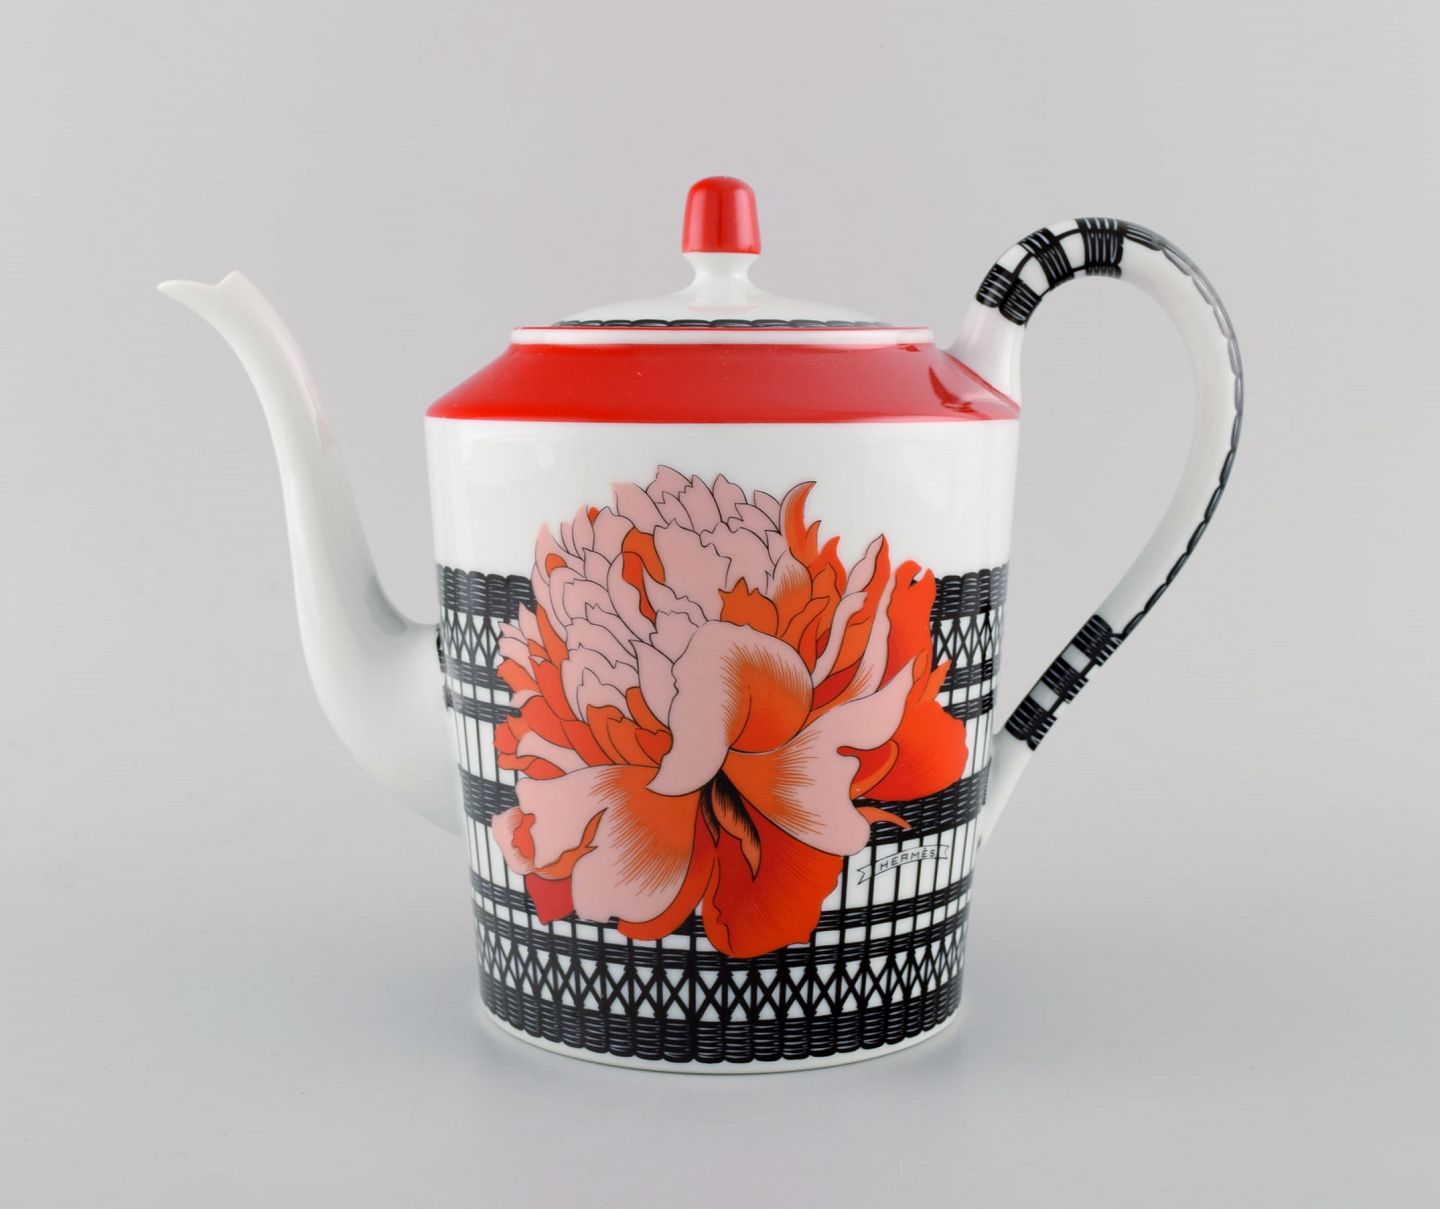 Rykke Tilsvarende Sobriquette L Art - Hermès kaffekande i porcelæn med røde blomster og sort/hvid